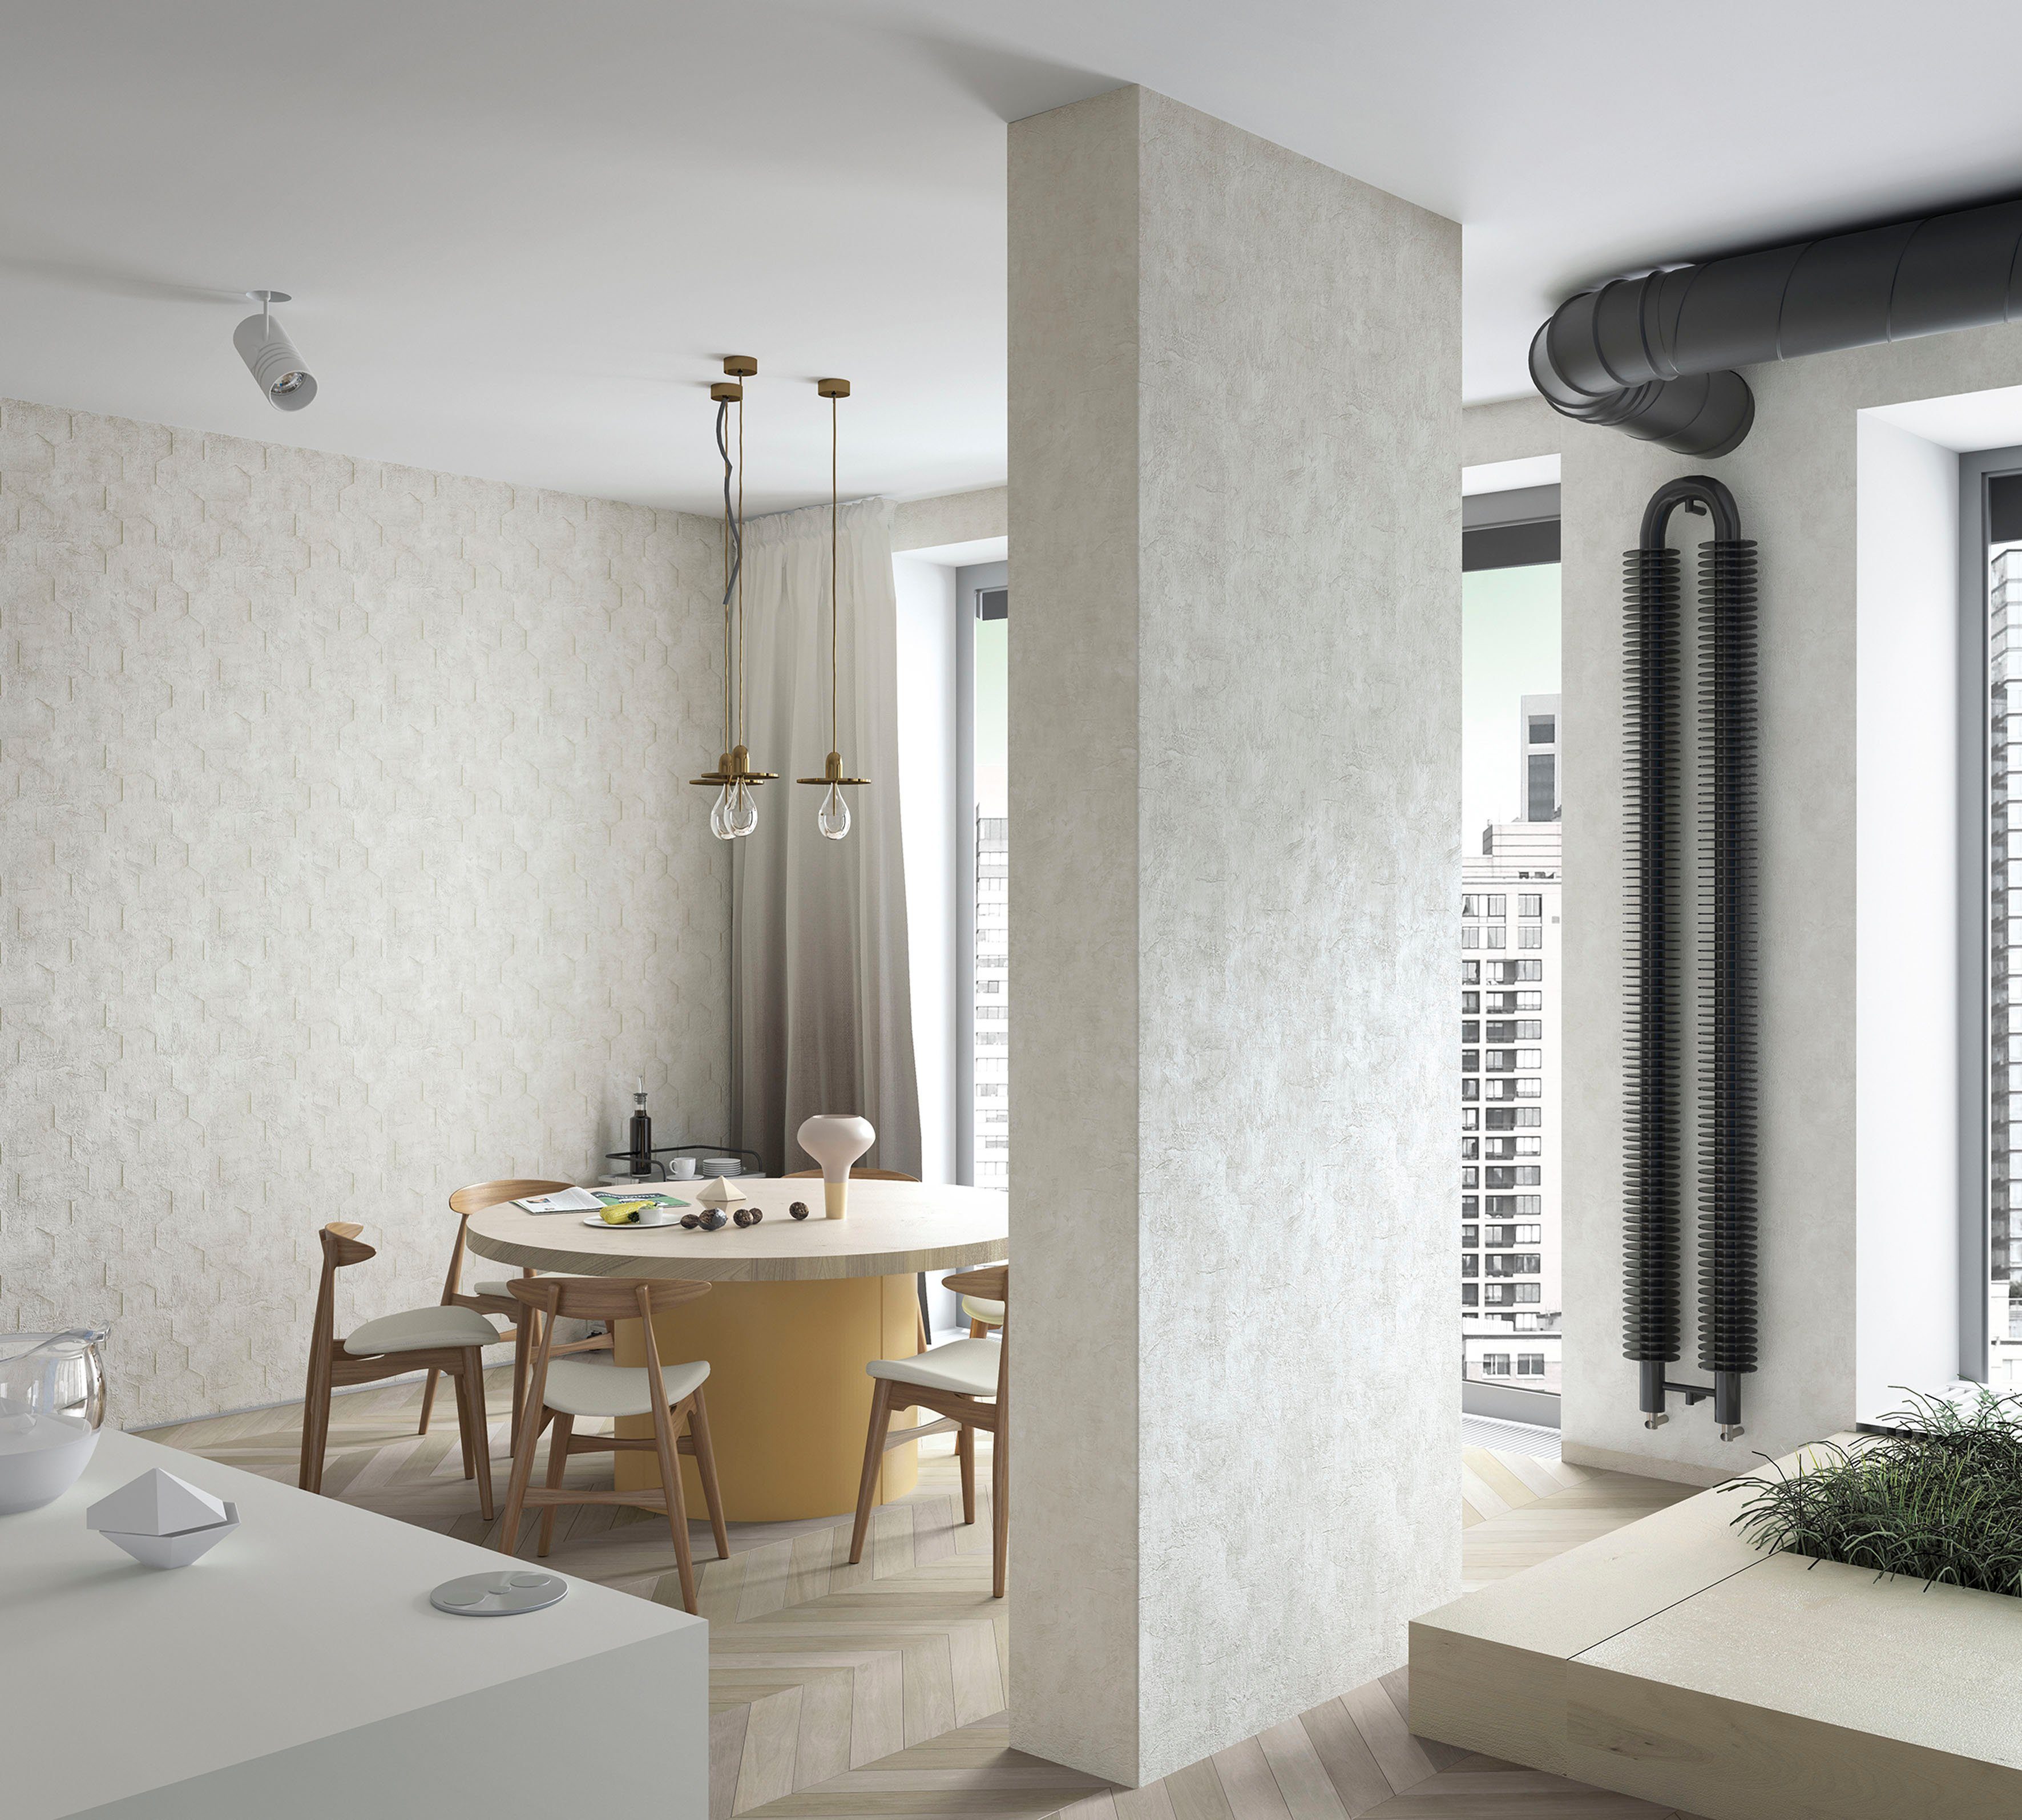 Hexagon, Vliestapete Schlafzimmer Küche Wohnzimmer beige matt, Marburg strukturiert, Vliestapete für moderne